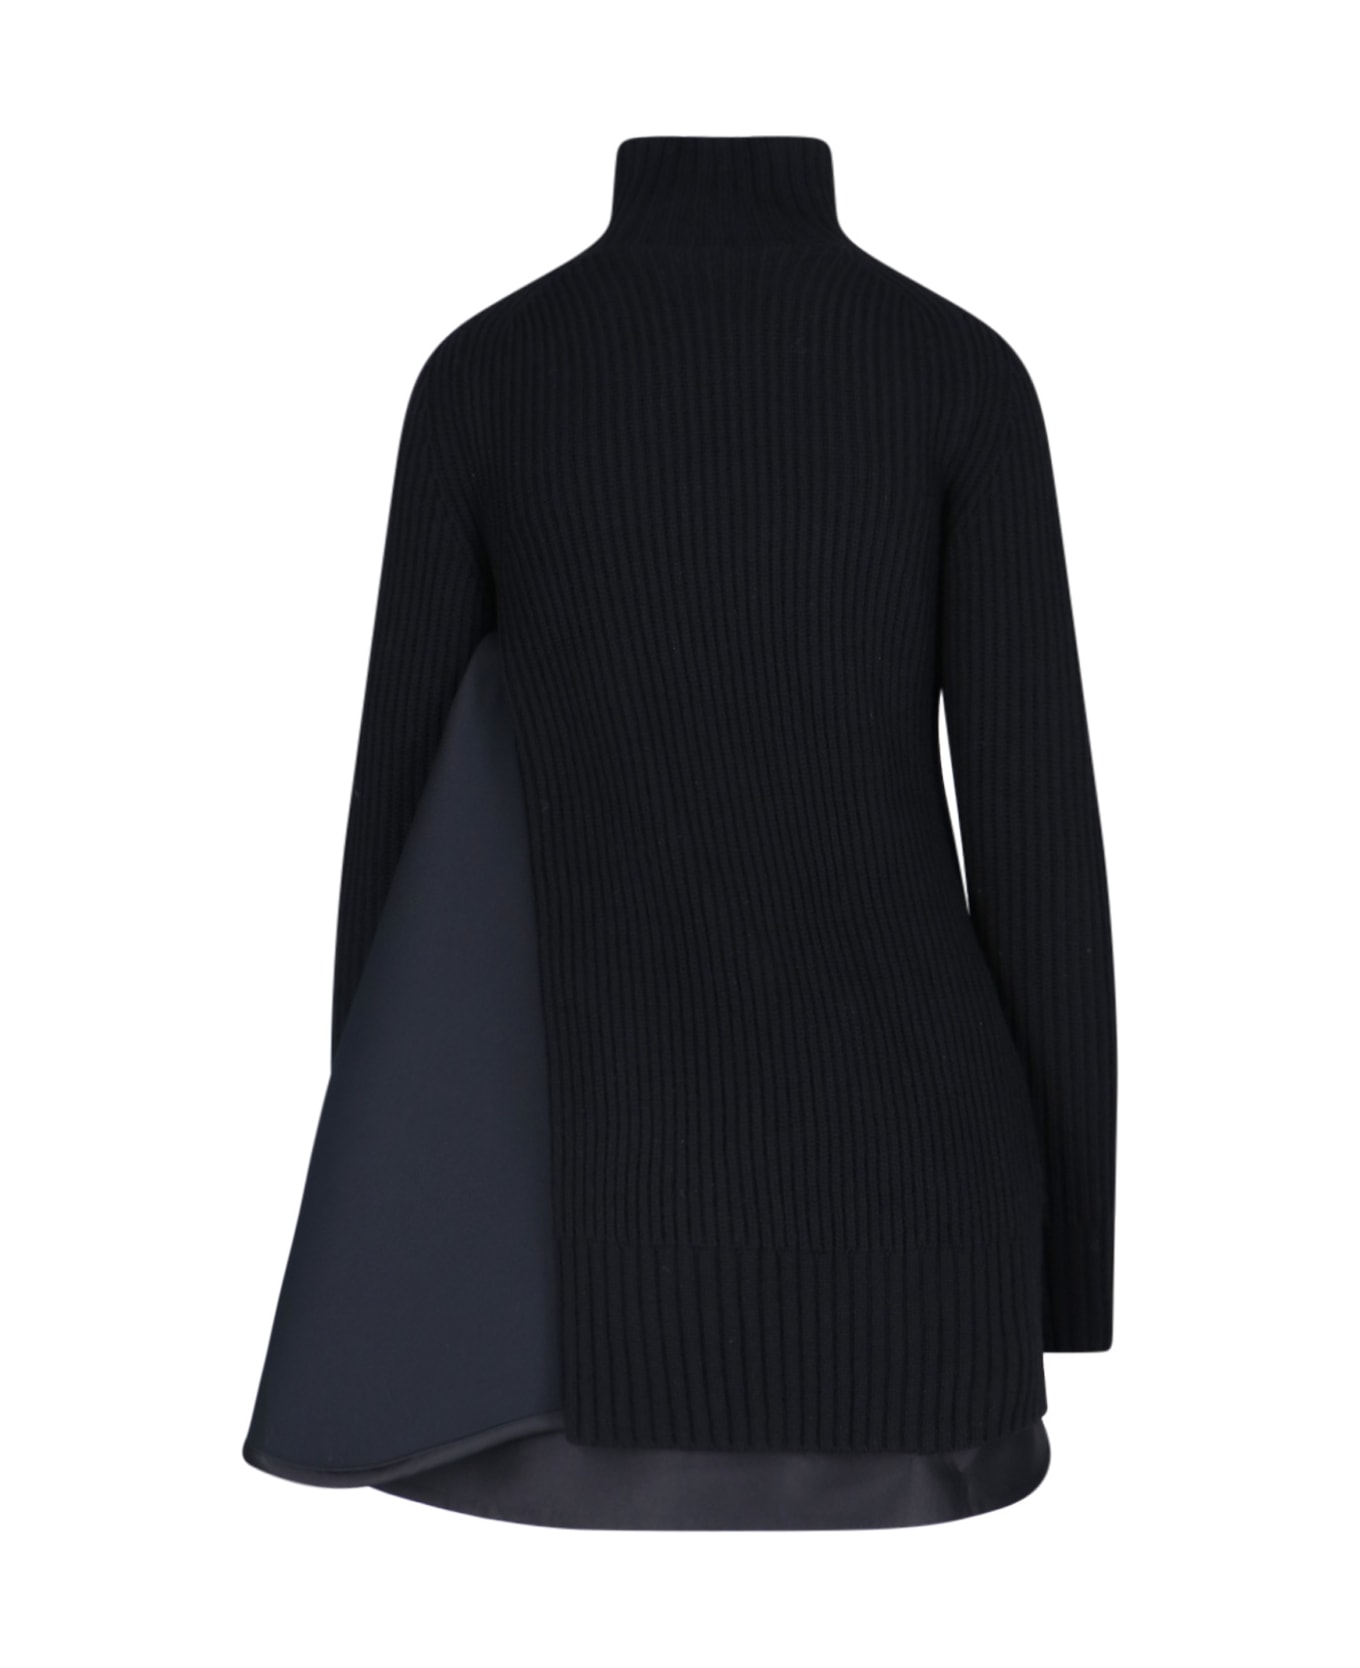 Sacai Knitted Dress - Black   ニットウェア